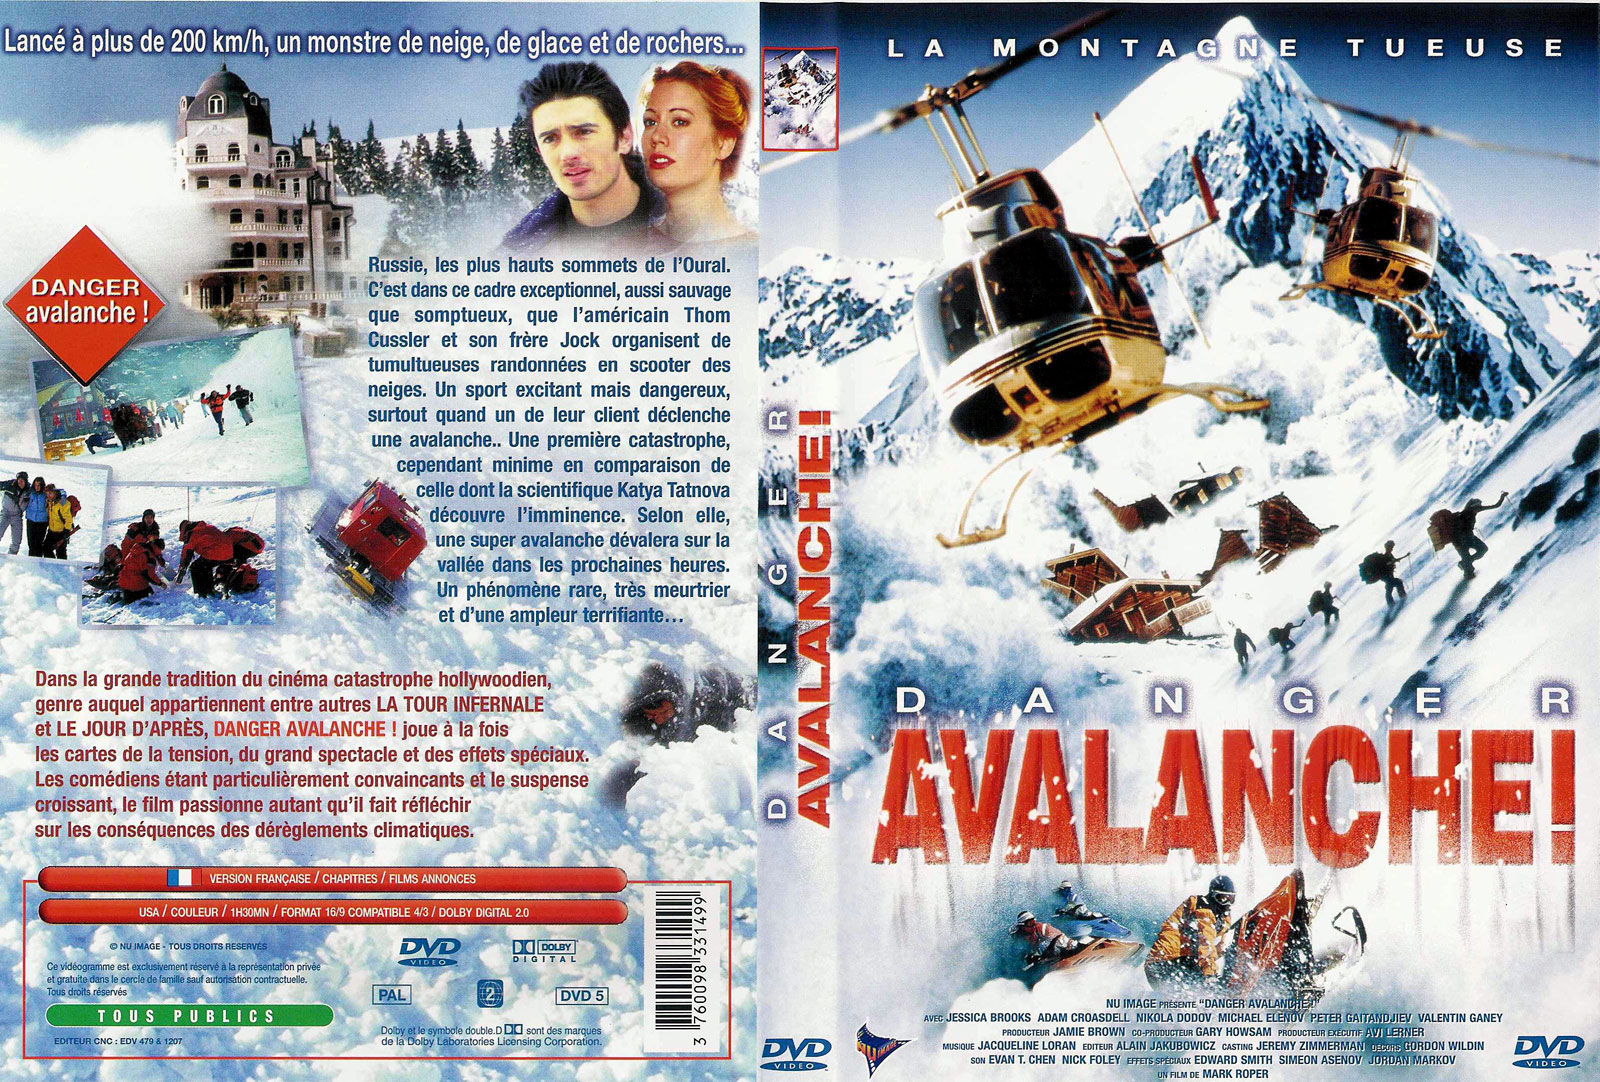 Jaquette DVD Danger avalanche